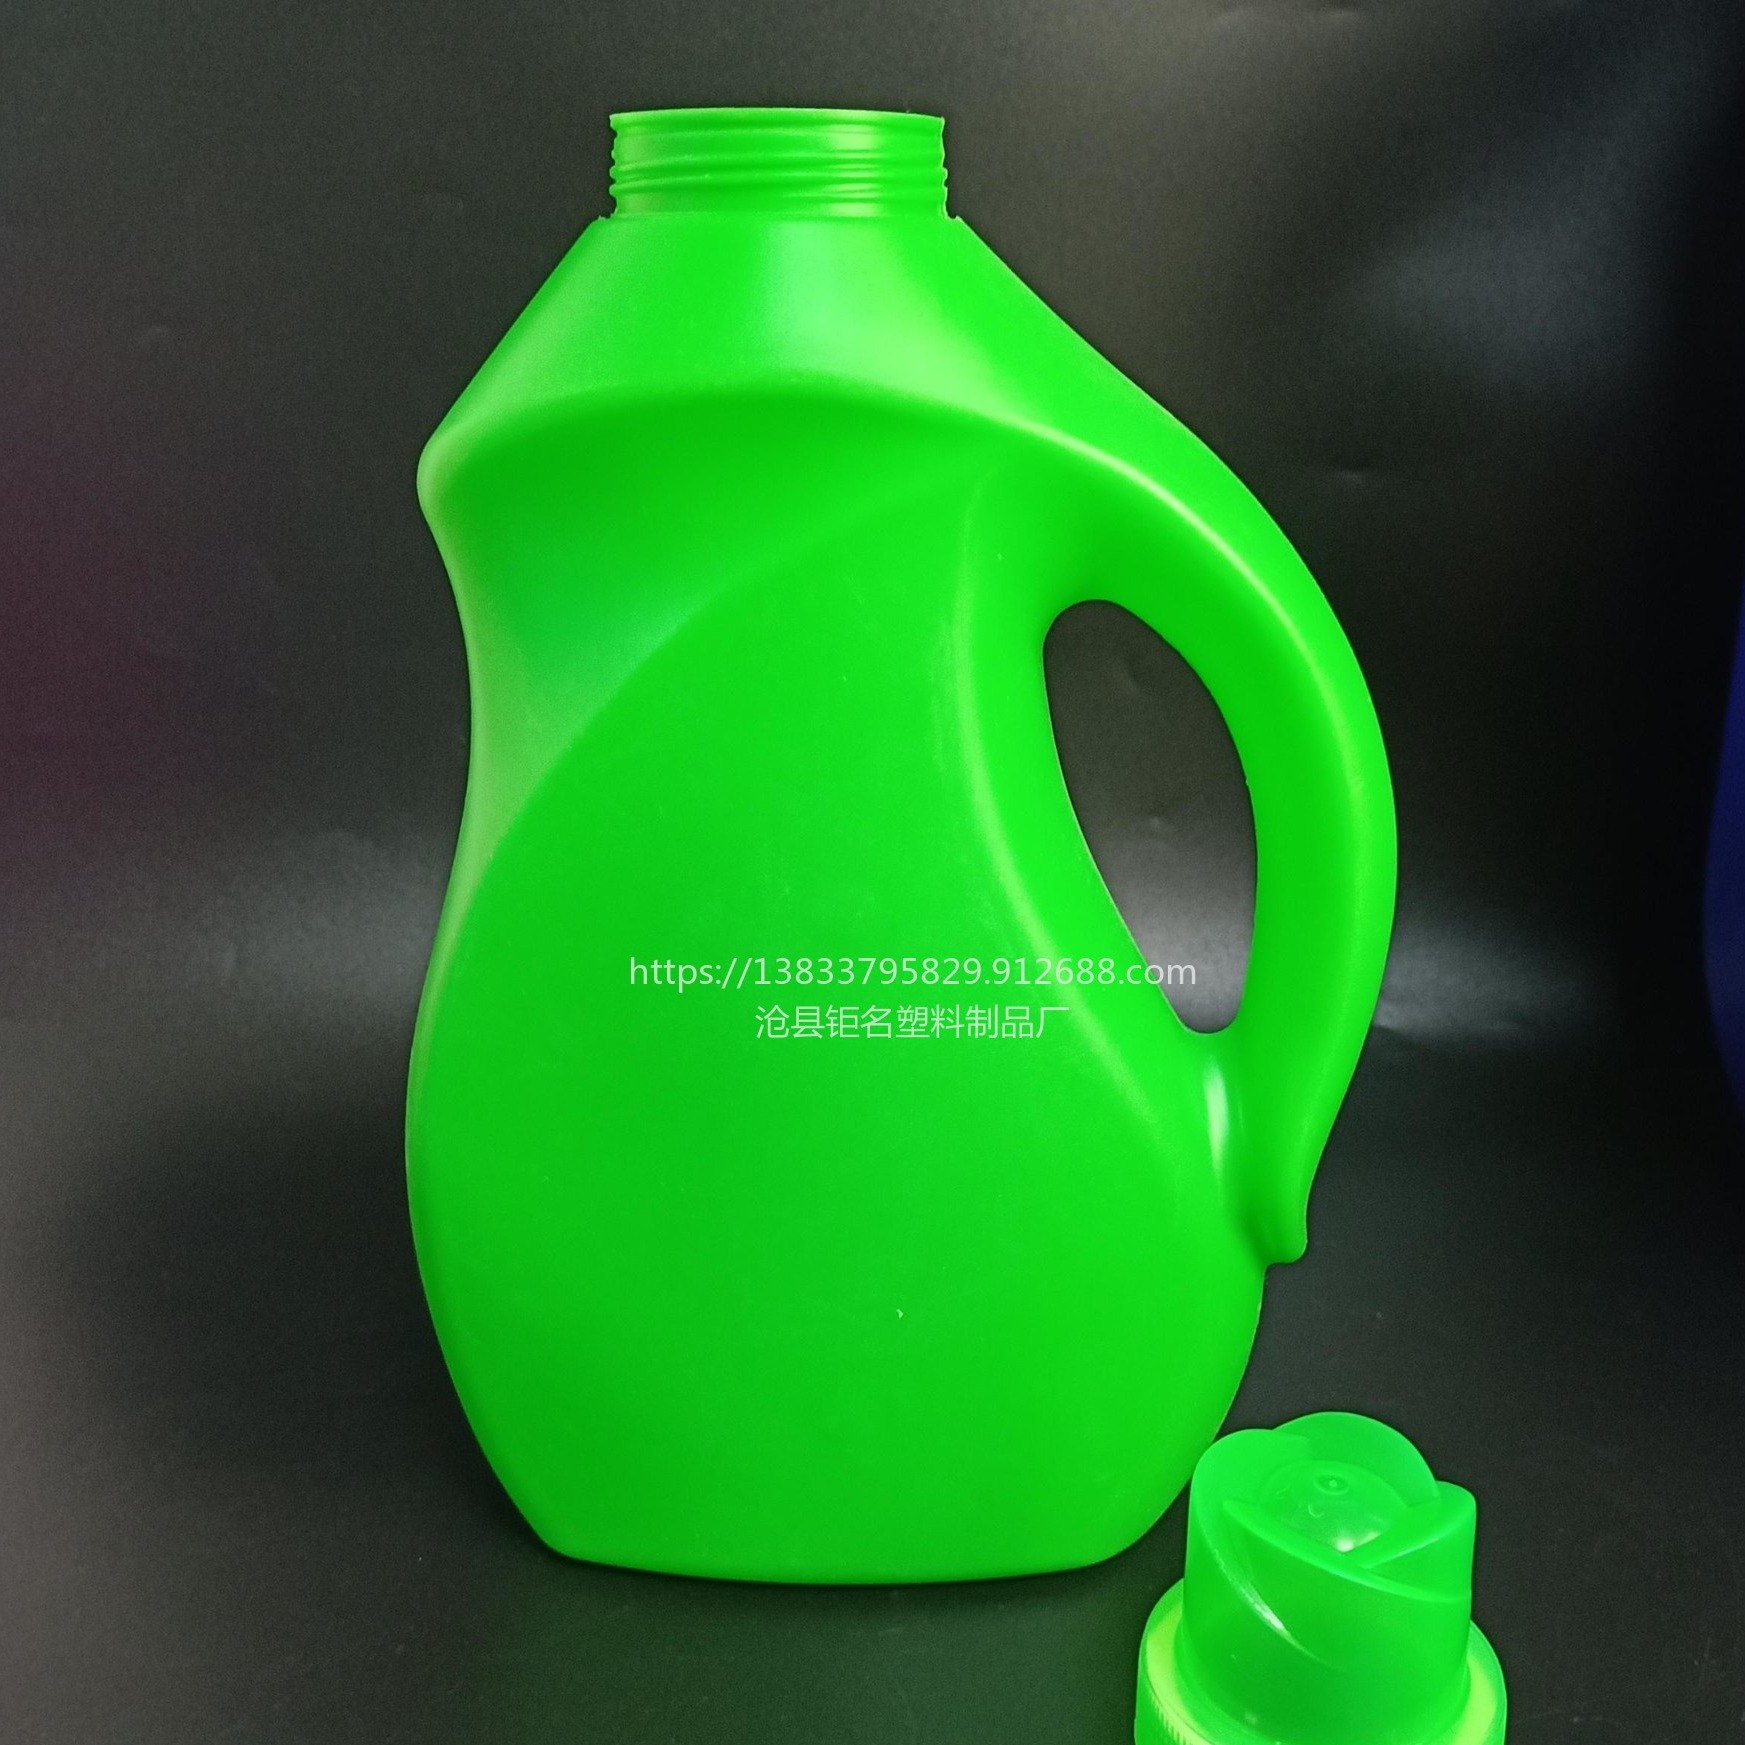 钜名供应 塑料瓶 2升 3升 洗衣液瓶 洗手液瓶 洗洁精瓶  加工定制 外型设计 开模生产 洗衣液壶 洗衣液桶